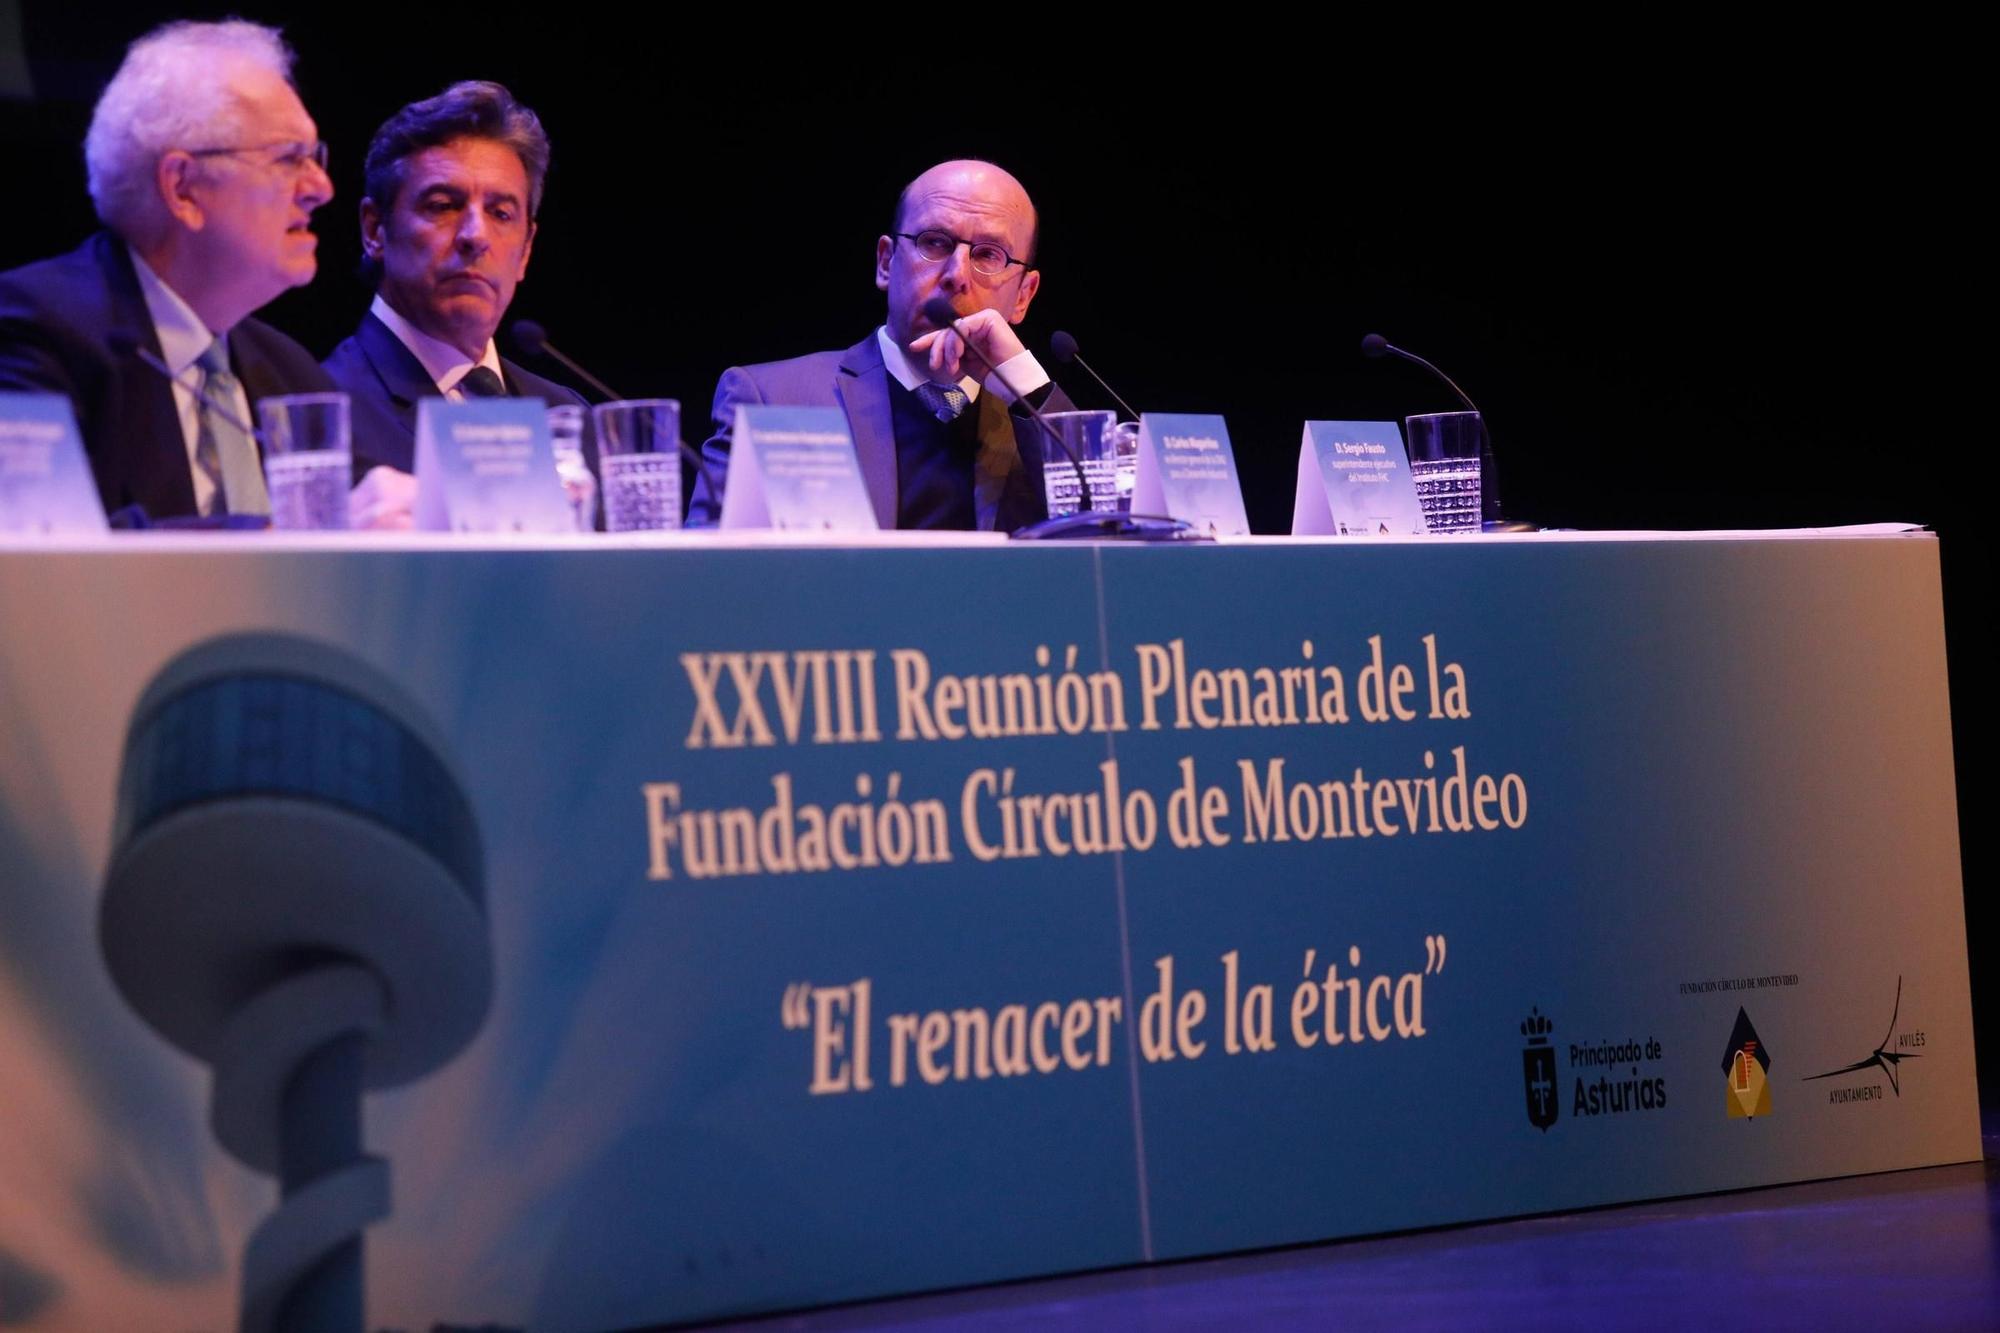 EN IMÁGENES: Una veintena de líderes iberoamericanos debate en Avilés sobre ética y democracia